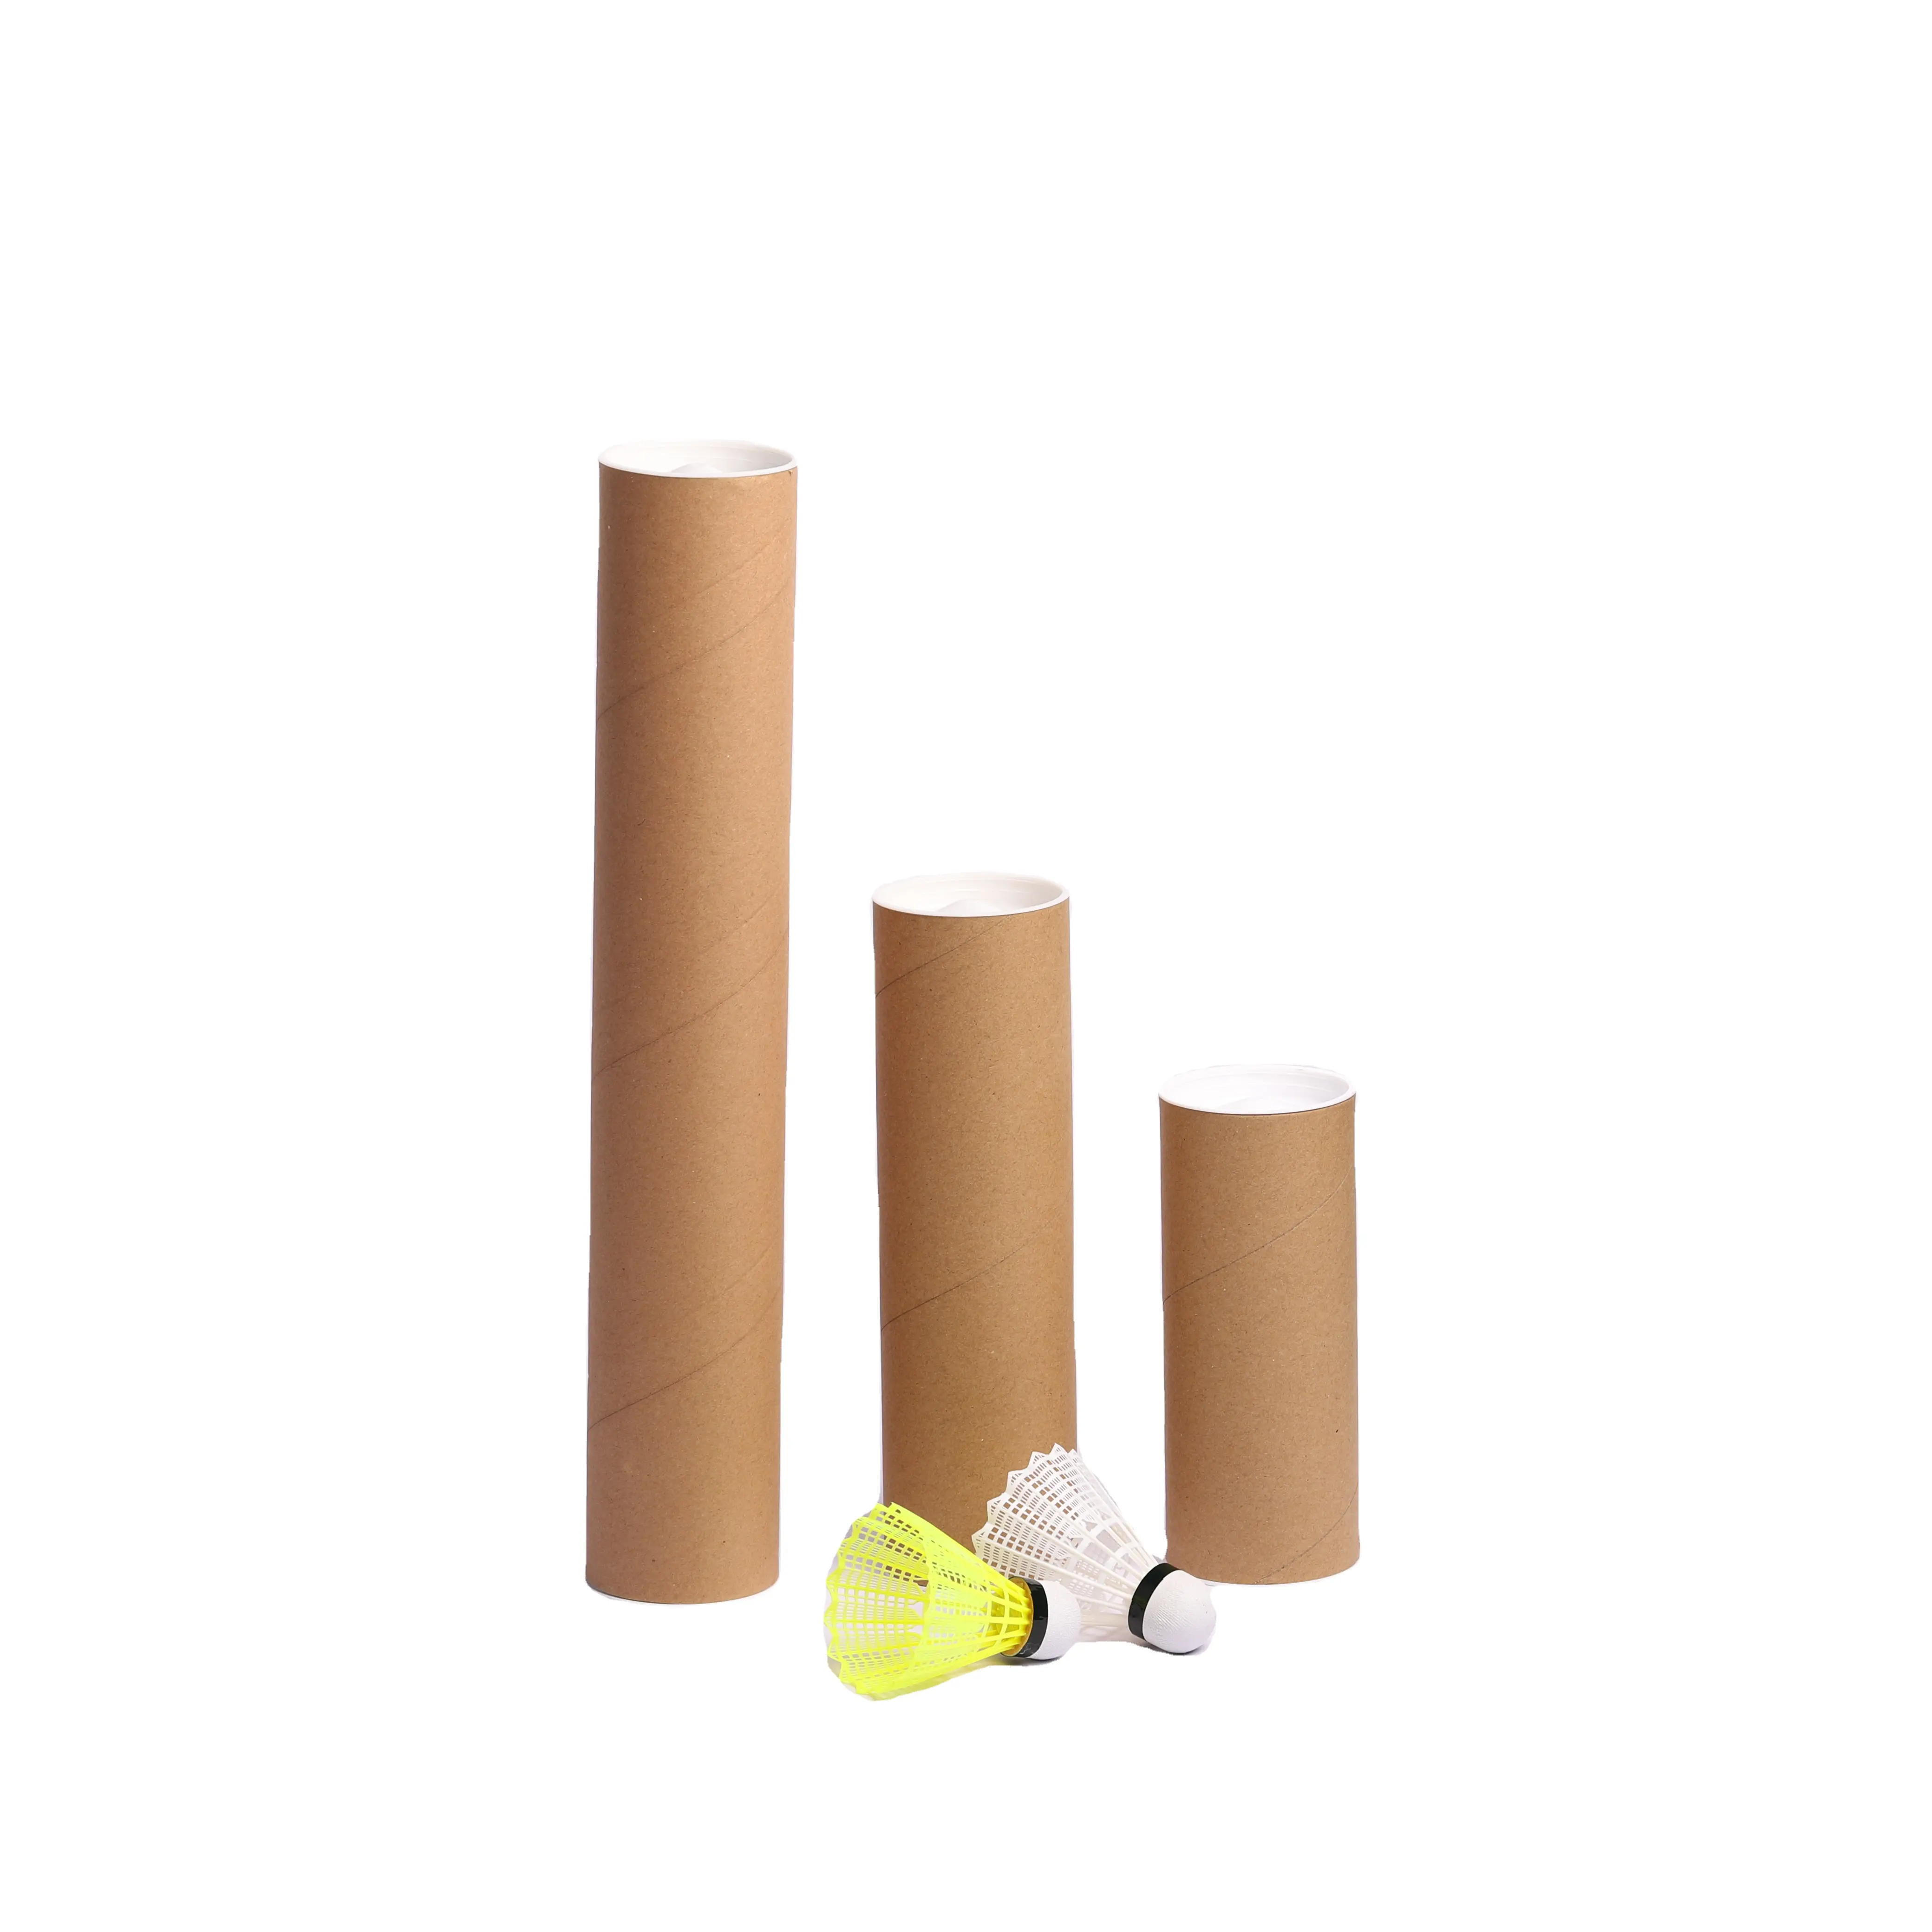 OEM di alta qualità Super resistente Nylon Badminton volano 6 pz palla testa di sughero per gli sport all'aria aperta